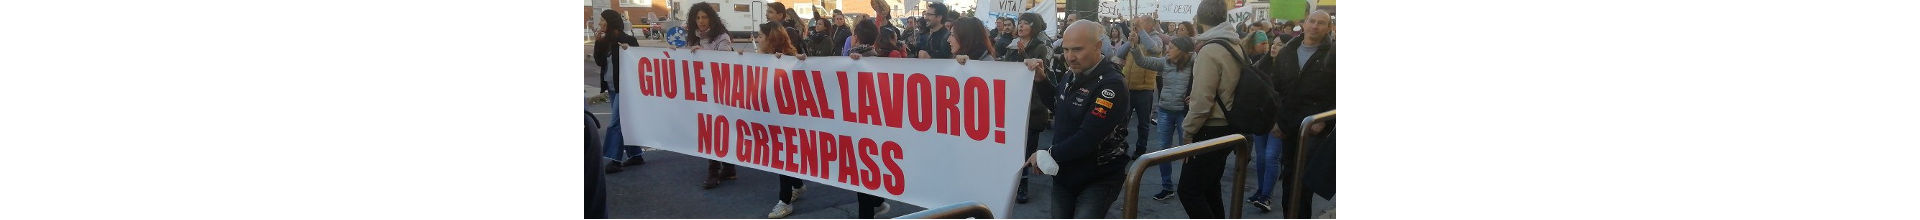 Libertà Livorno contro la discarica di Limoncino